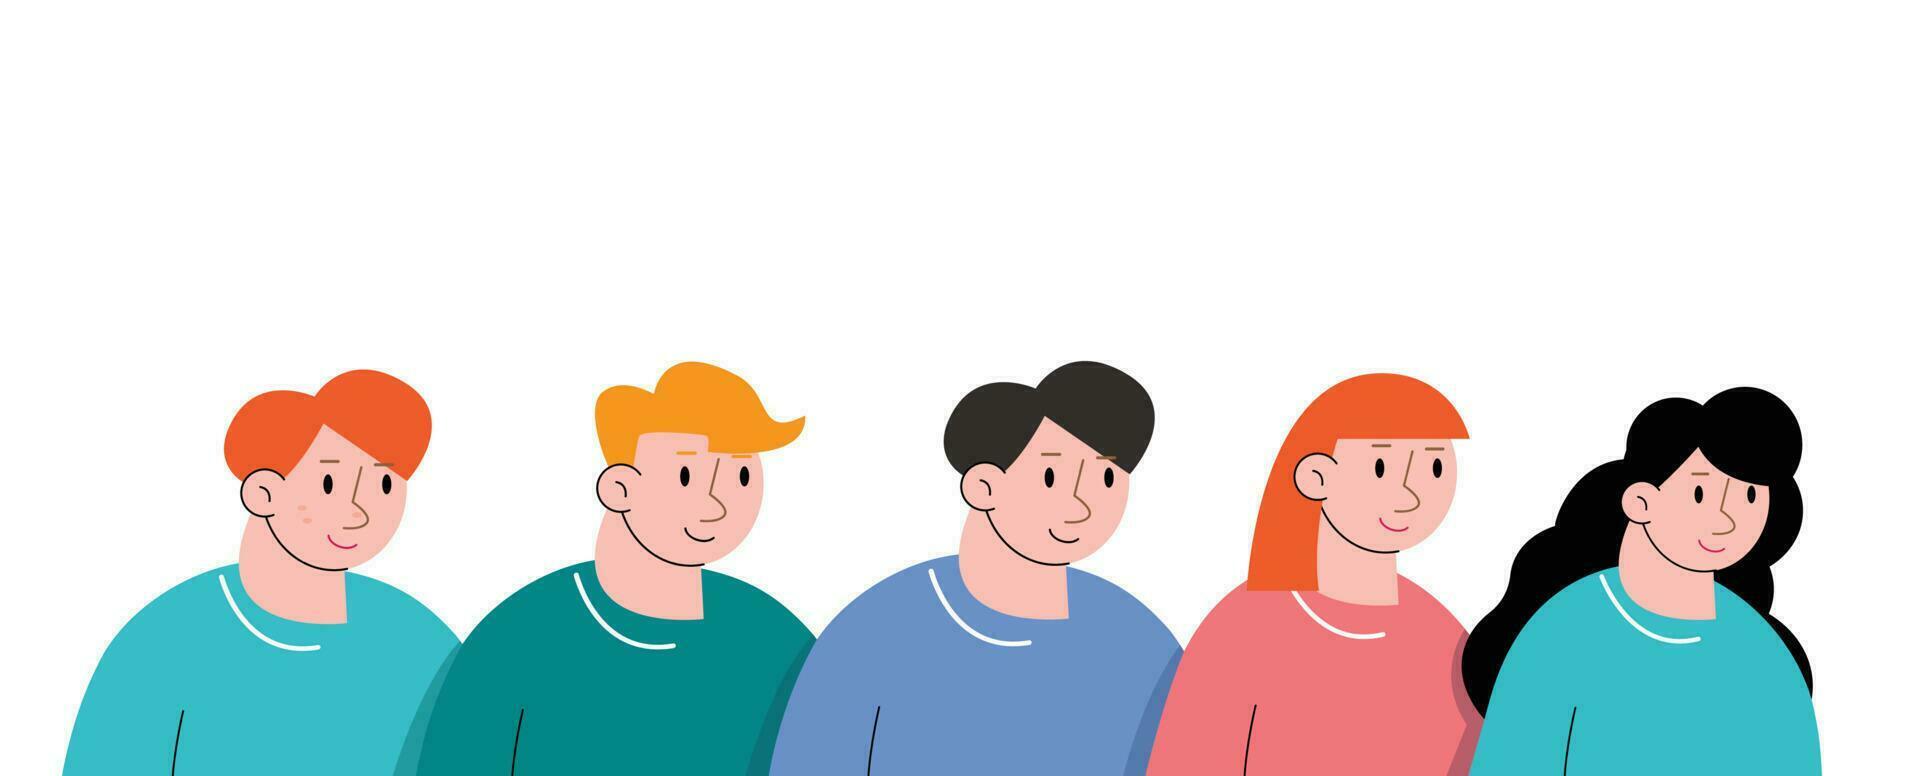 grupp av människor avatar tecknad serie vektor illustration